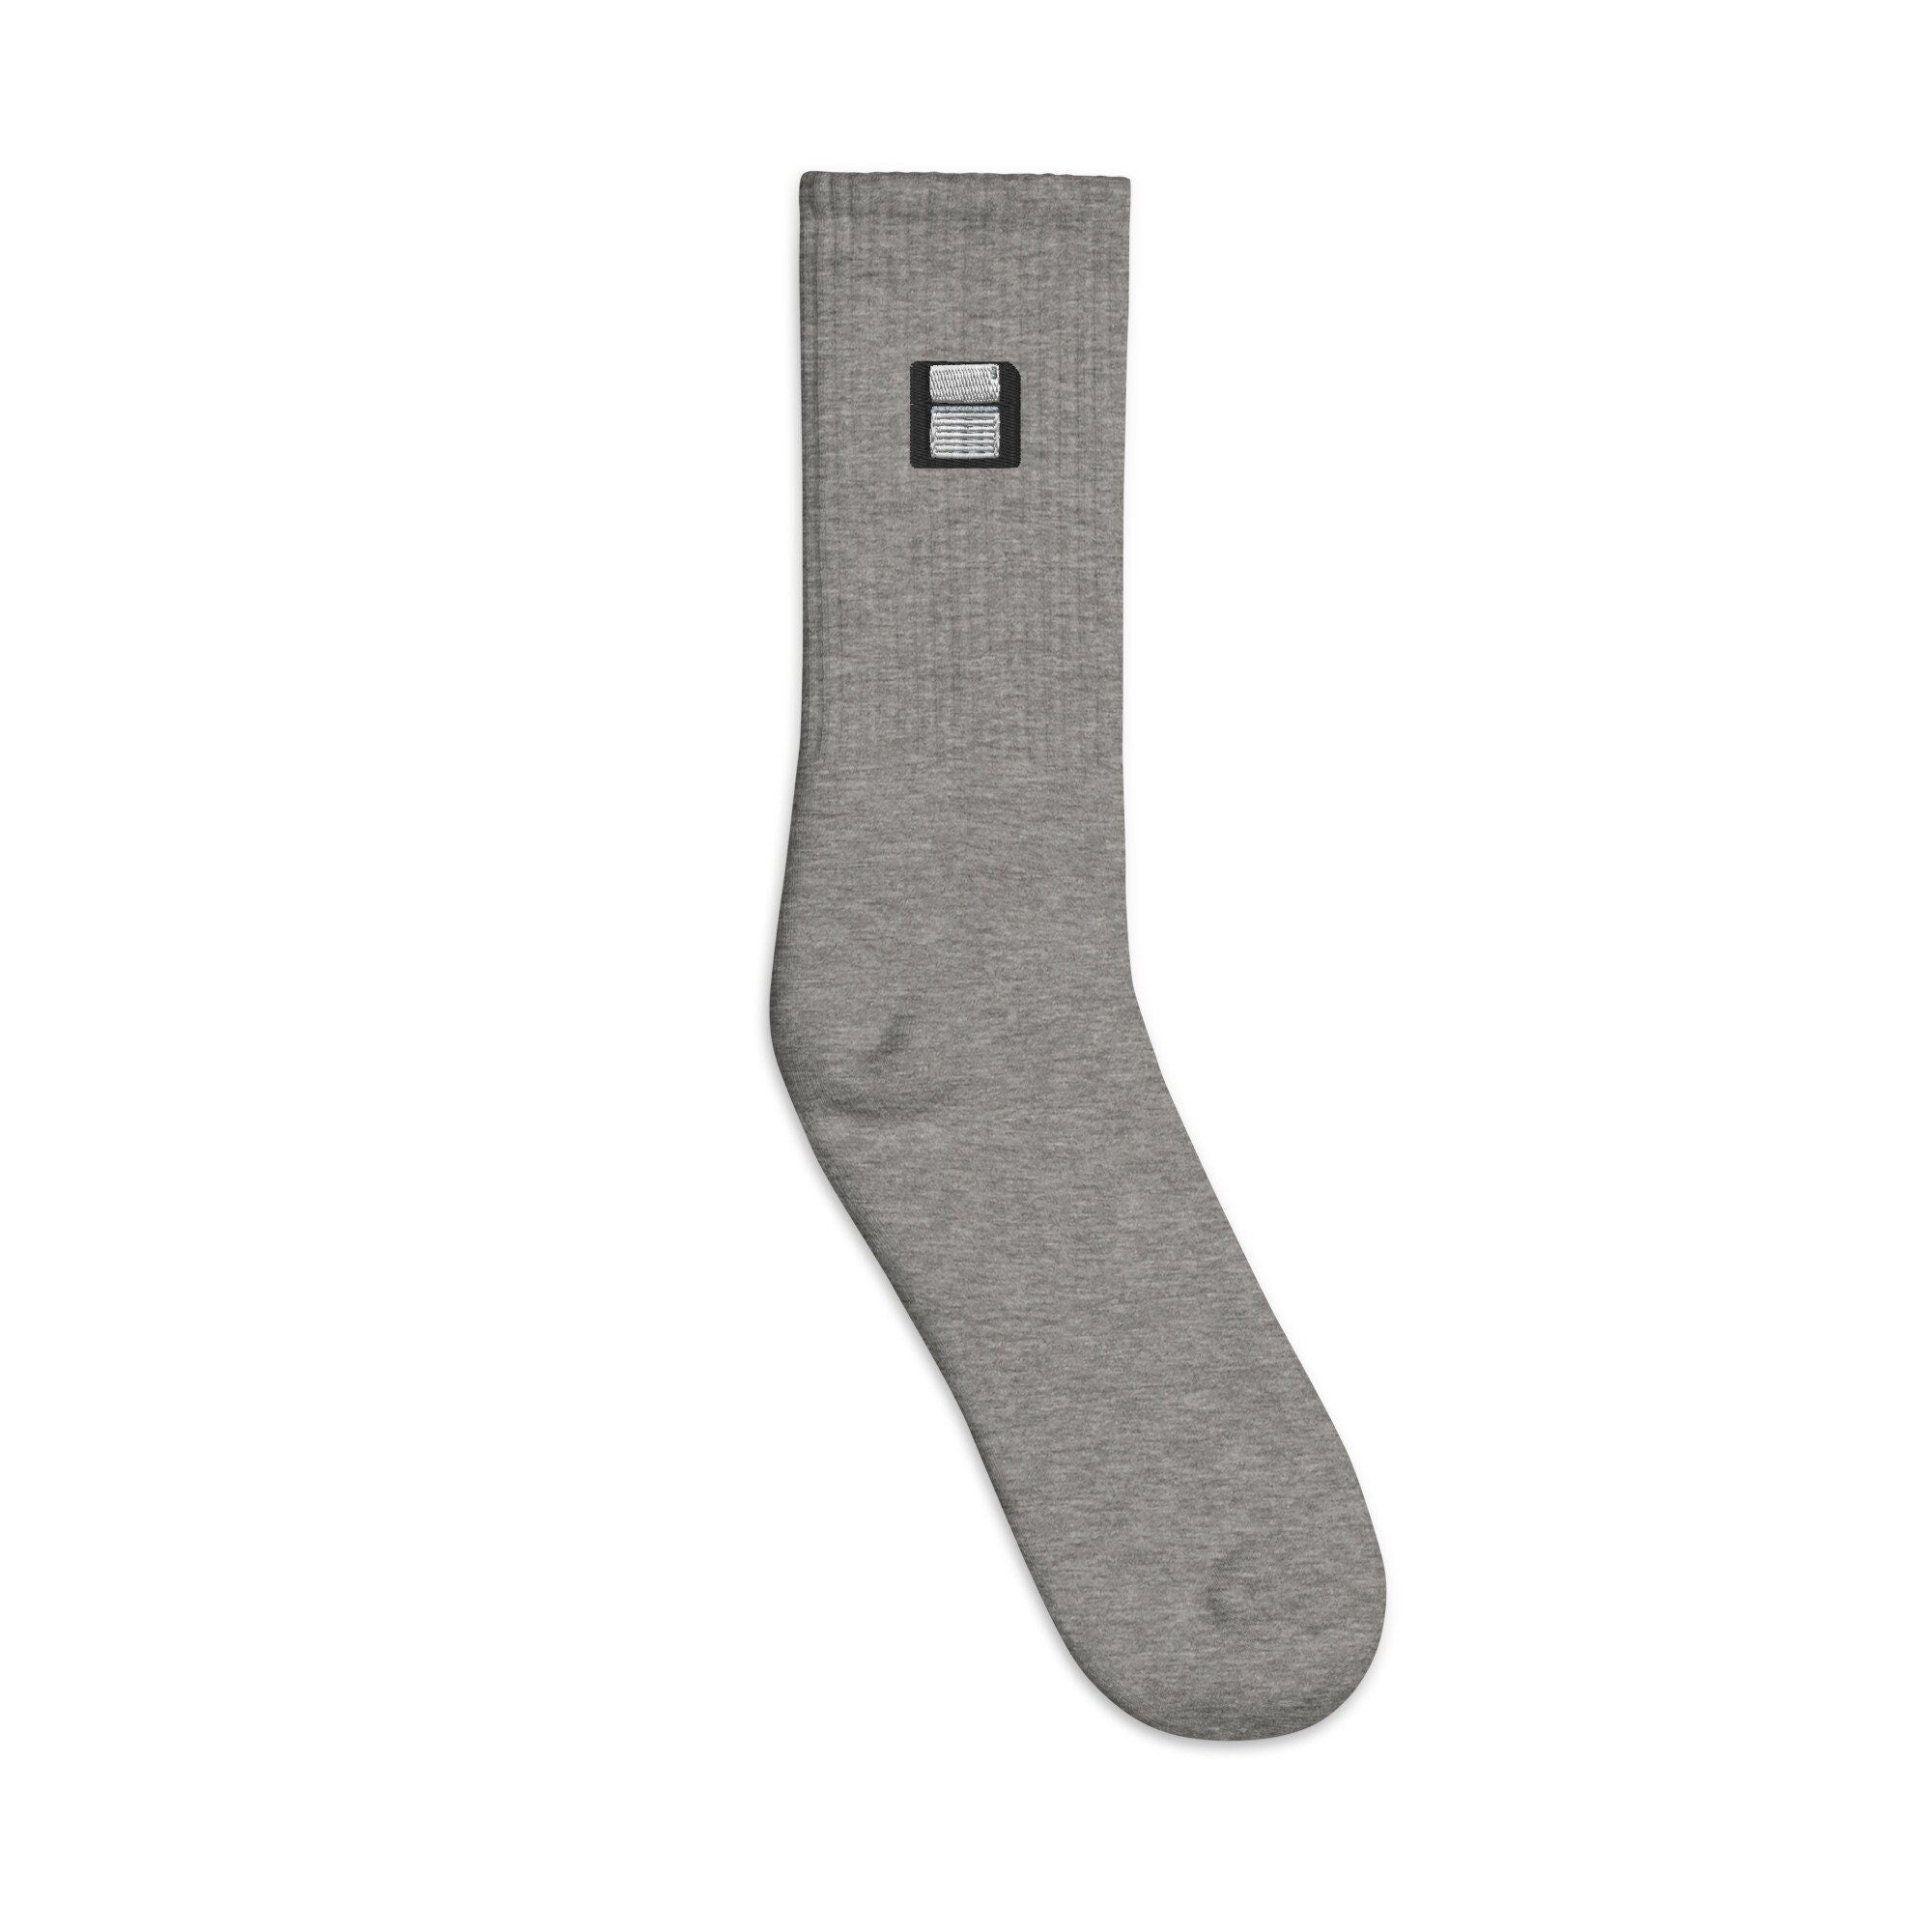 Floppy Disk Embroidered Socks, Premium Embroidered Socks, Long Socks Gift - Multiple Colors